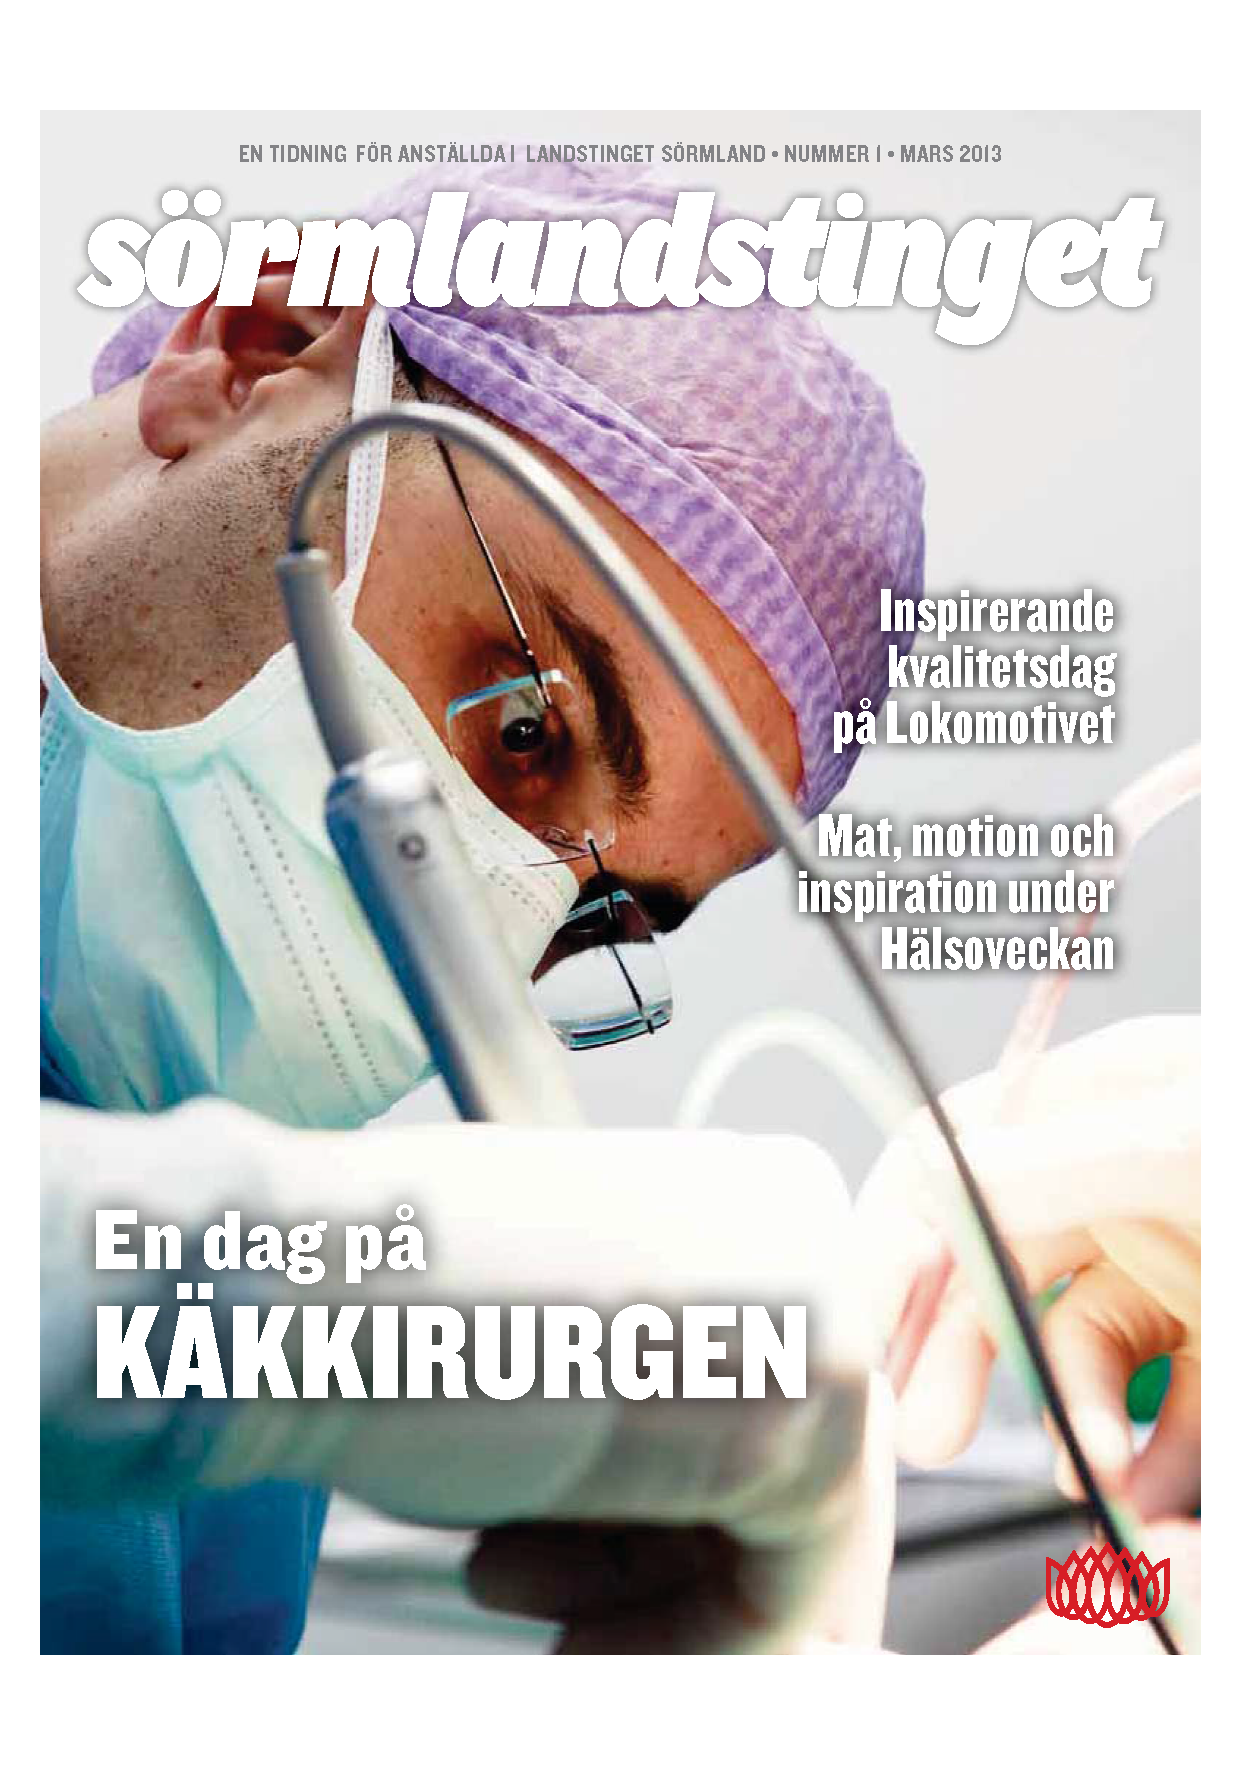 Käkkirurgi Malmö